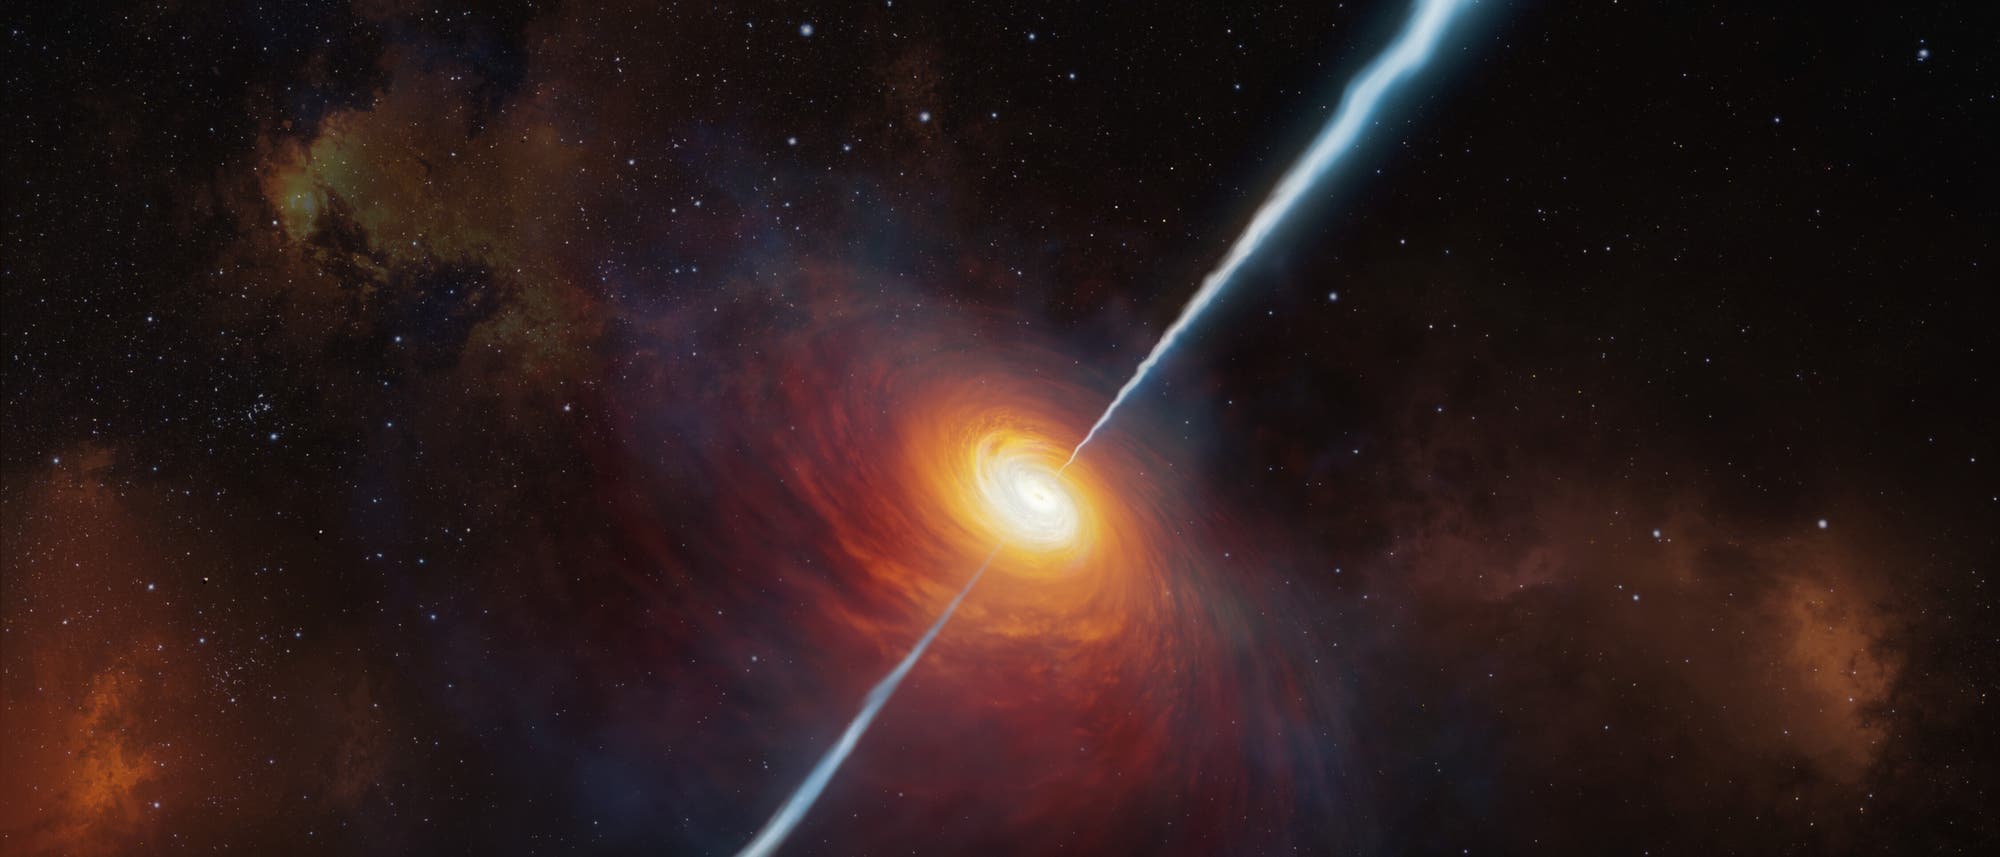 Der Quasar P172+18 in einer künstlerischen Darstellung